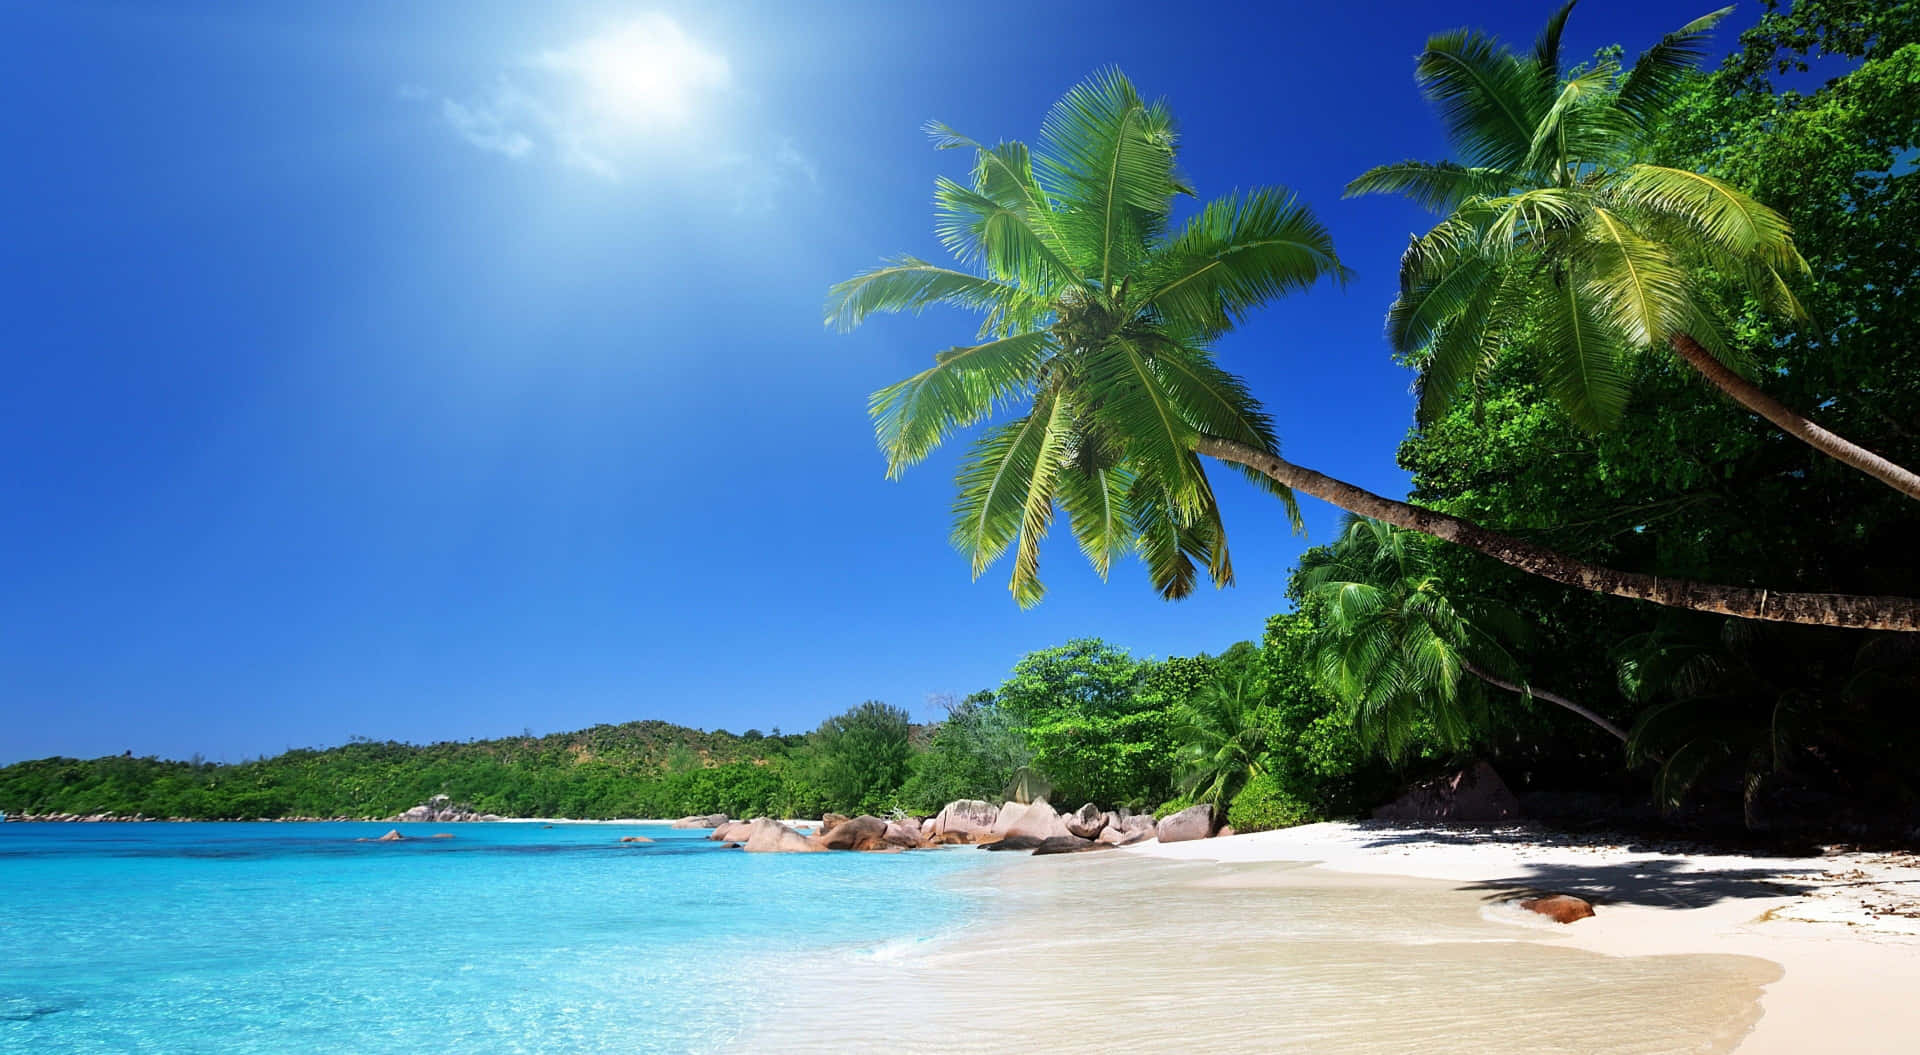 Relajándoteen El Paraíso: Siéntate Y Disfruta De La Belleza De Esta Impresionante Playa En Calidad 4k.